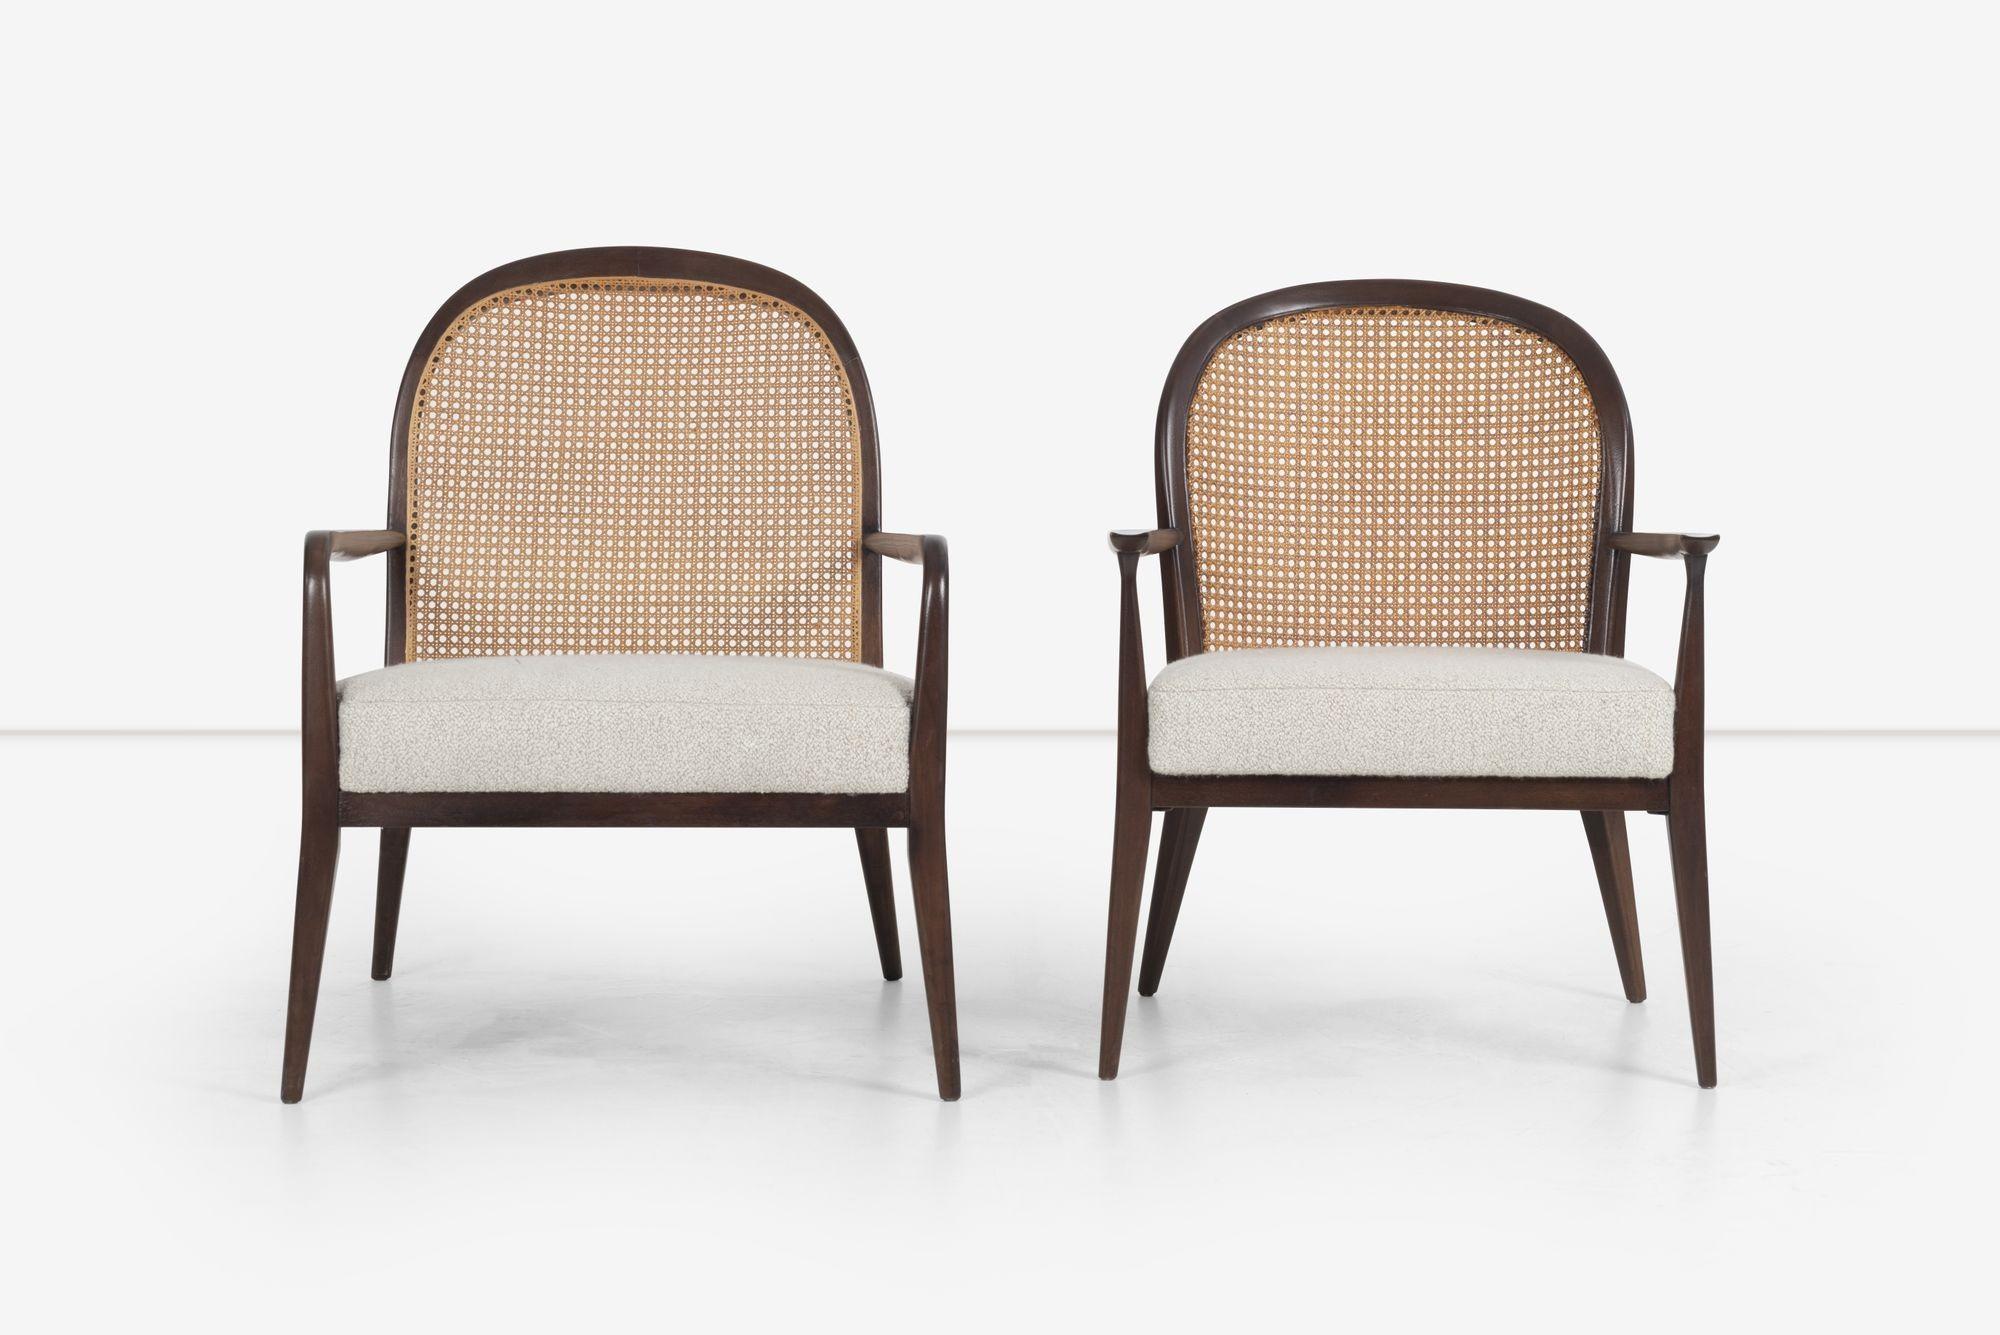 Ein Paar Paul McCobb Sessel mit Rohrrücken für Widdicomb, Serie 800.
Rahmen aus Mahagoni mit gepolsterten Sitzen auf Boucle.
Das Set wurde entwickelt, um den größeren Stuhlrahmen mit einem etwas kleineren Rahmen zu kombinieren.
Neu lackiert und